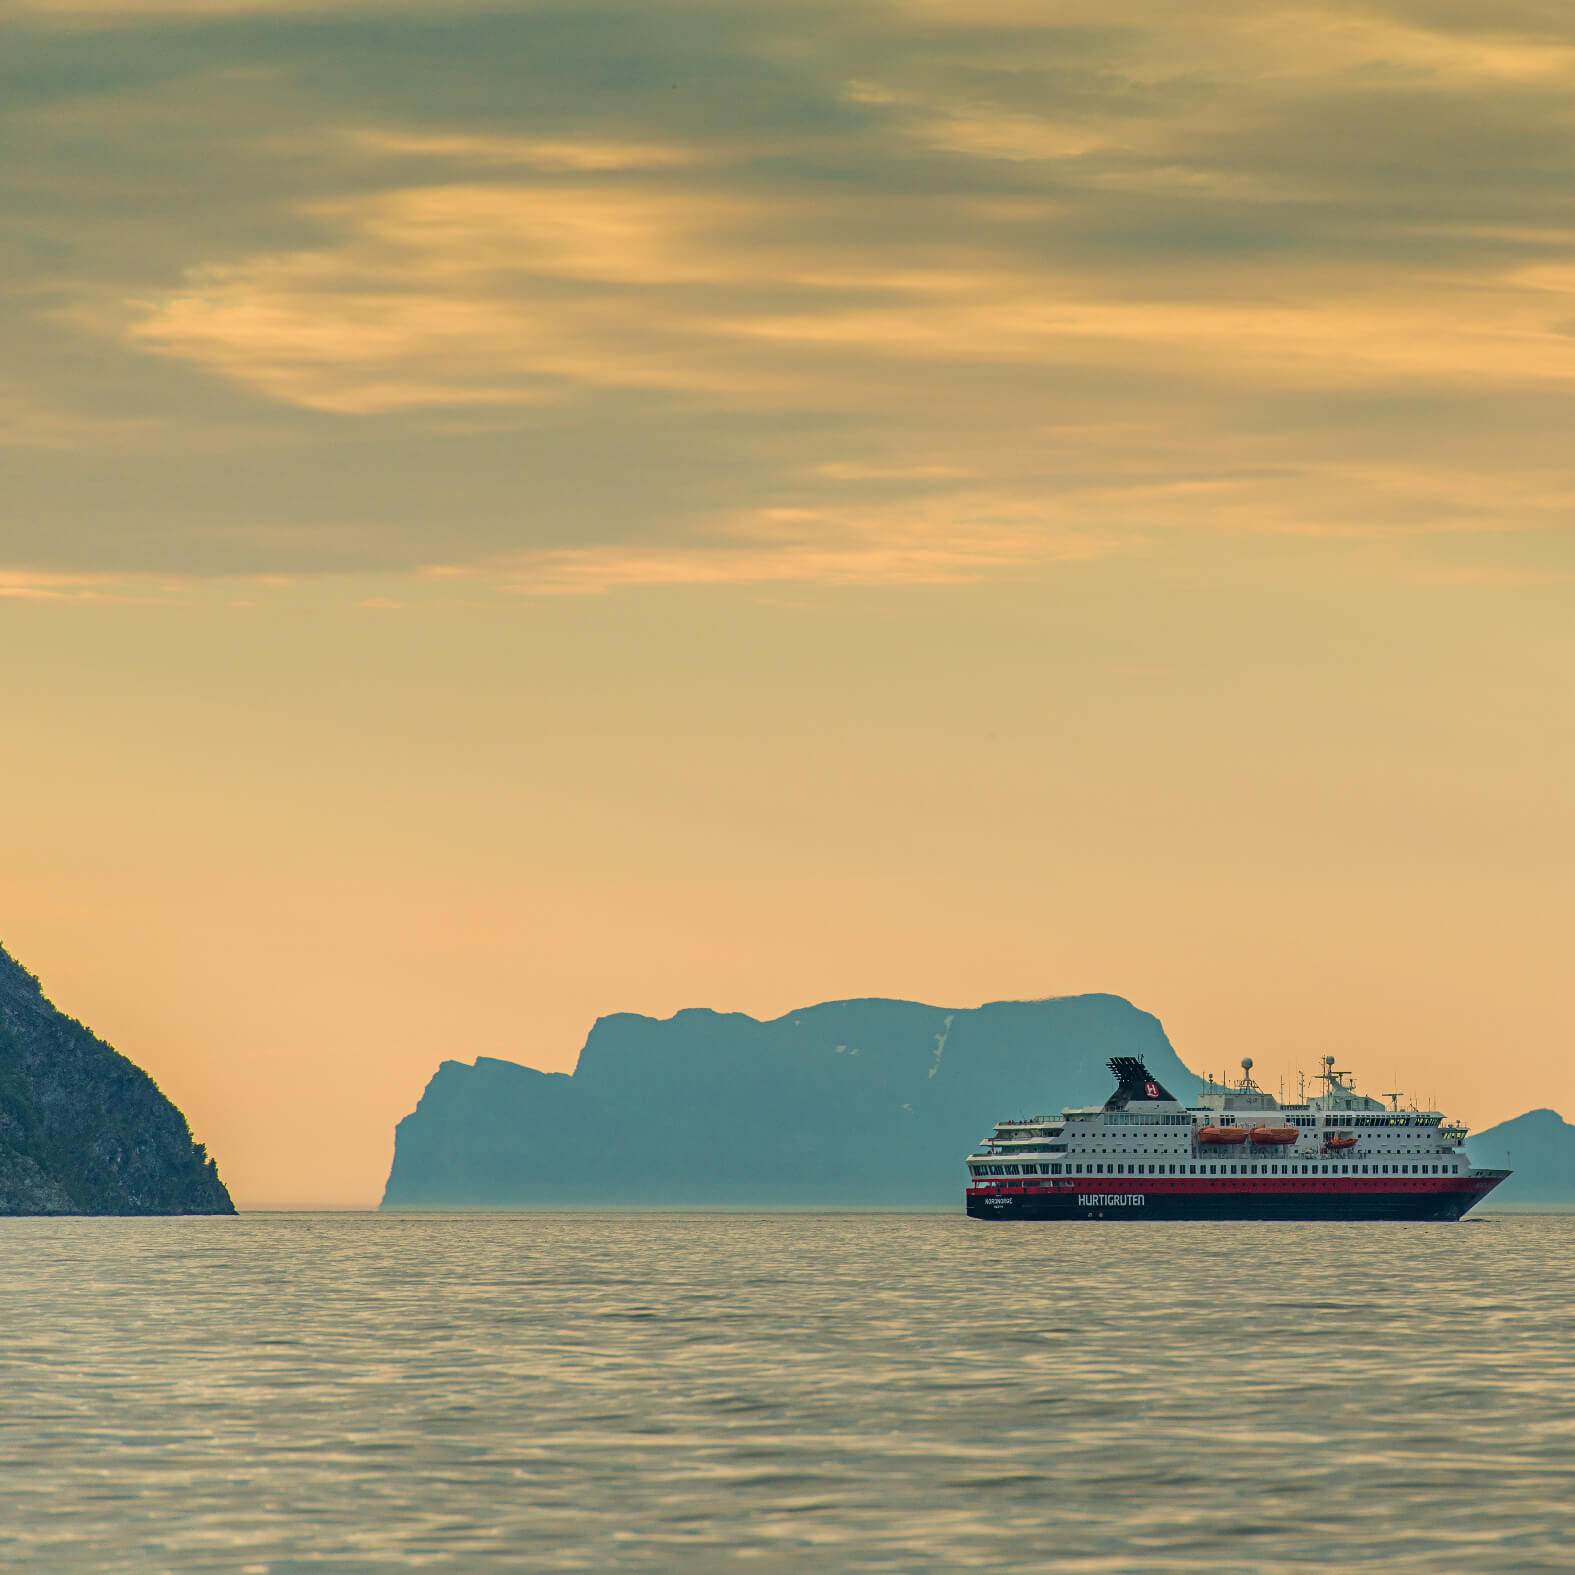 Hurtigruten ship at sea in sunset